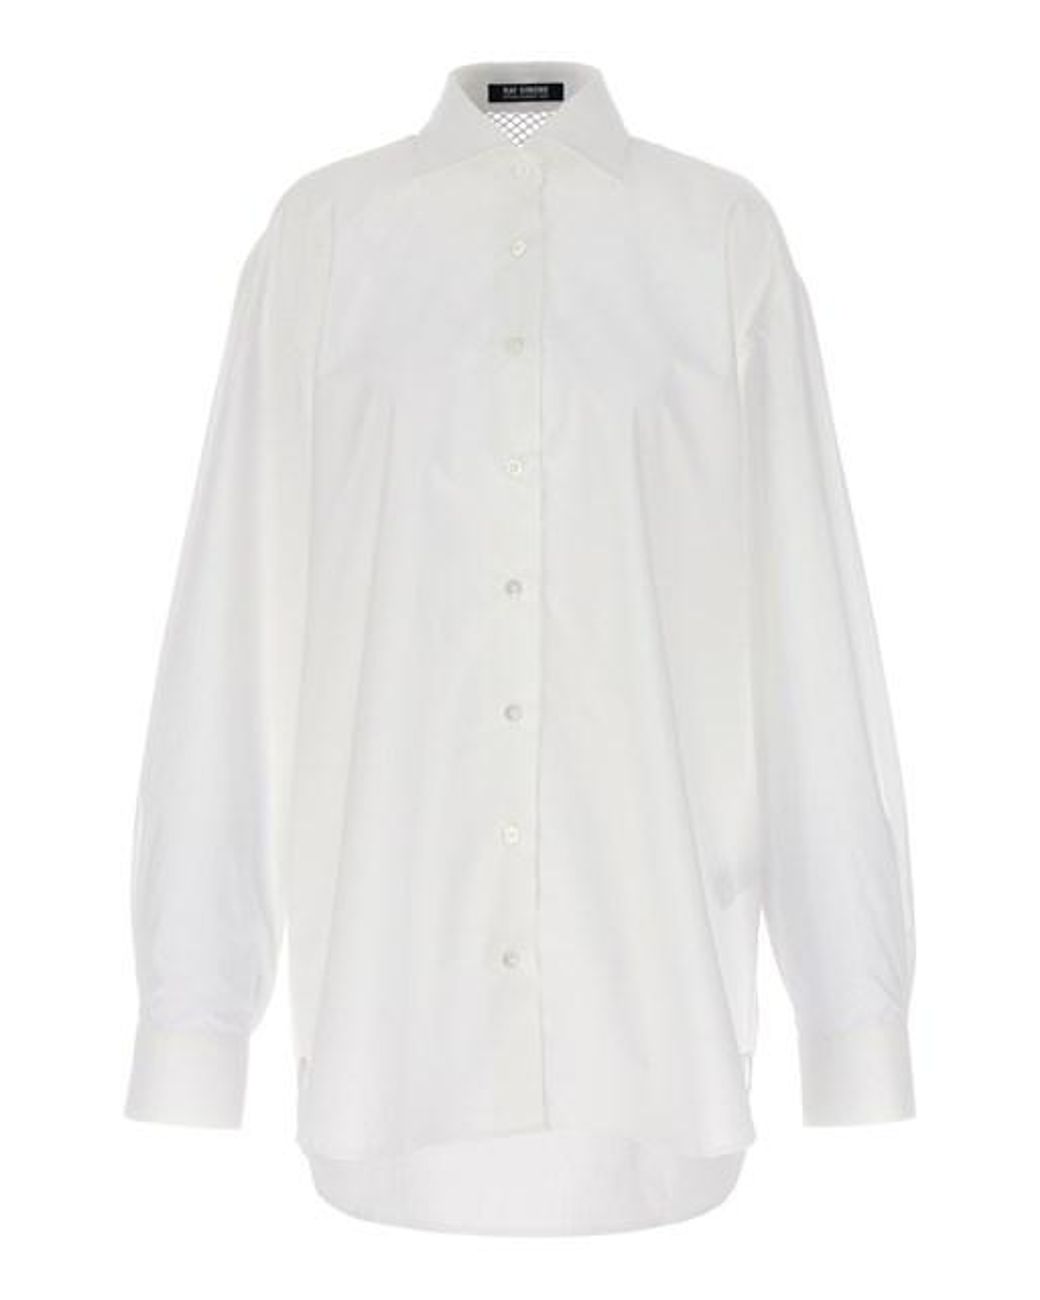 Raf Simons Mesh Insert Shirt in White | Lyst